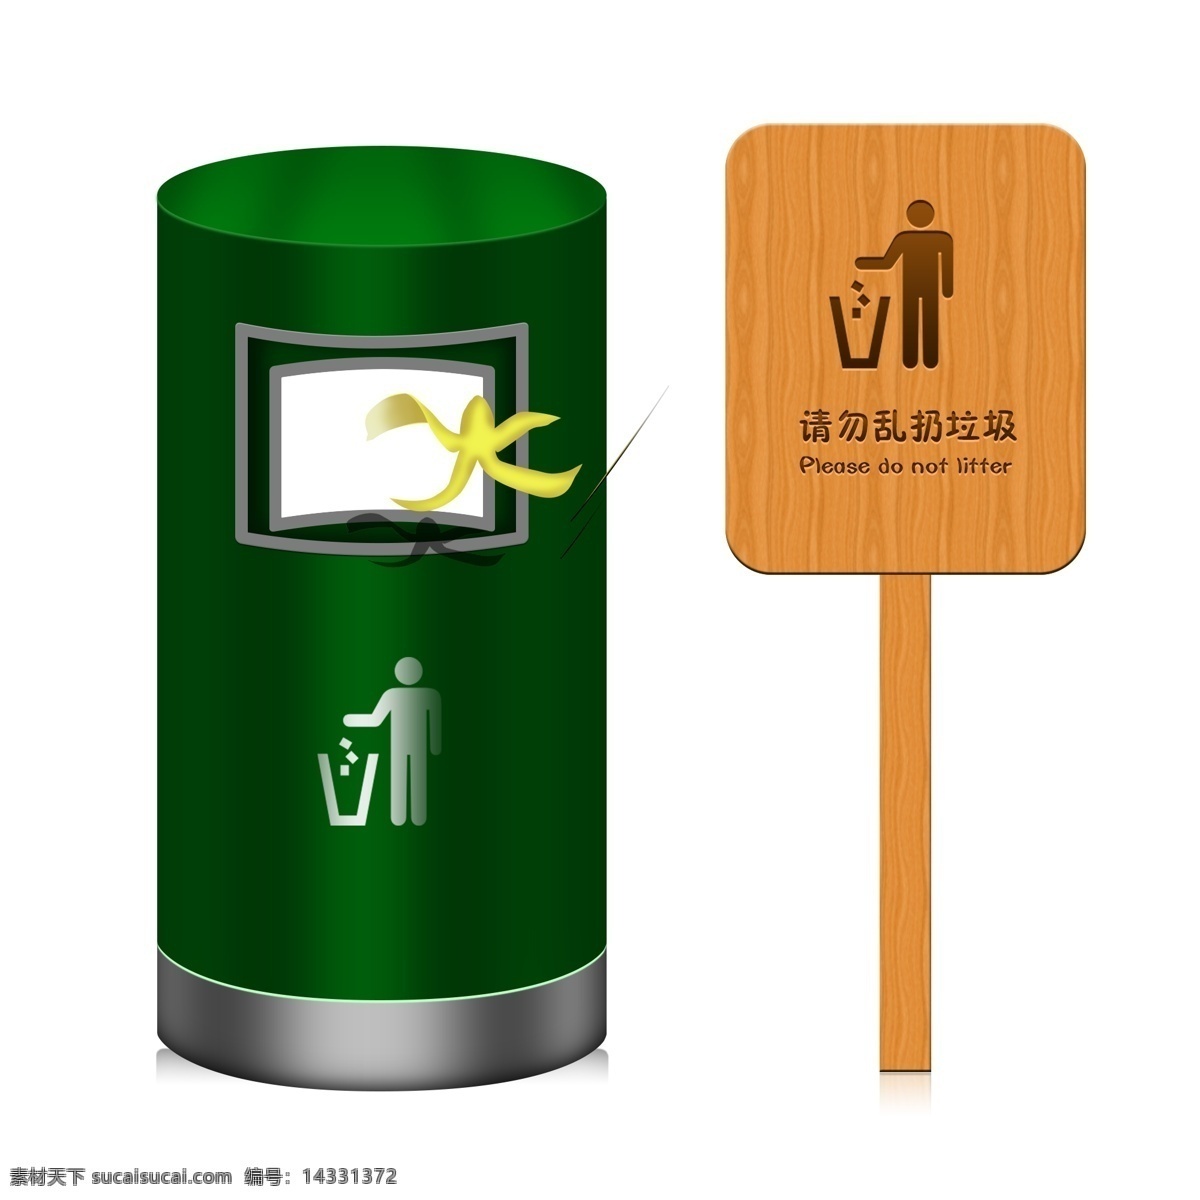 路边 标识 请勿 乱 扔 垃圾 图案 垃圾桶 指示牌 标识牌 爱护环境 环境卫生 绿色垃圾桶